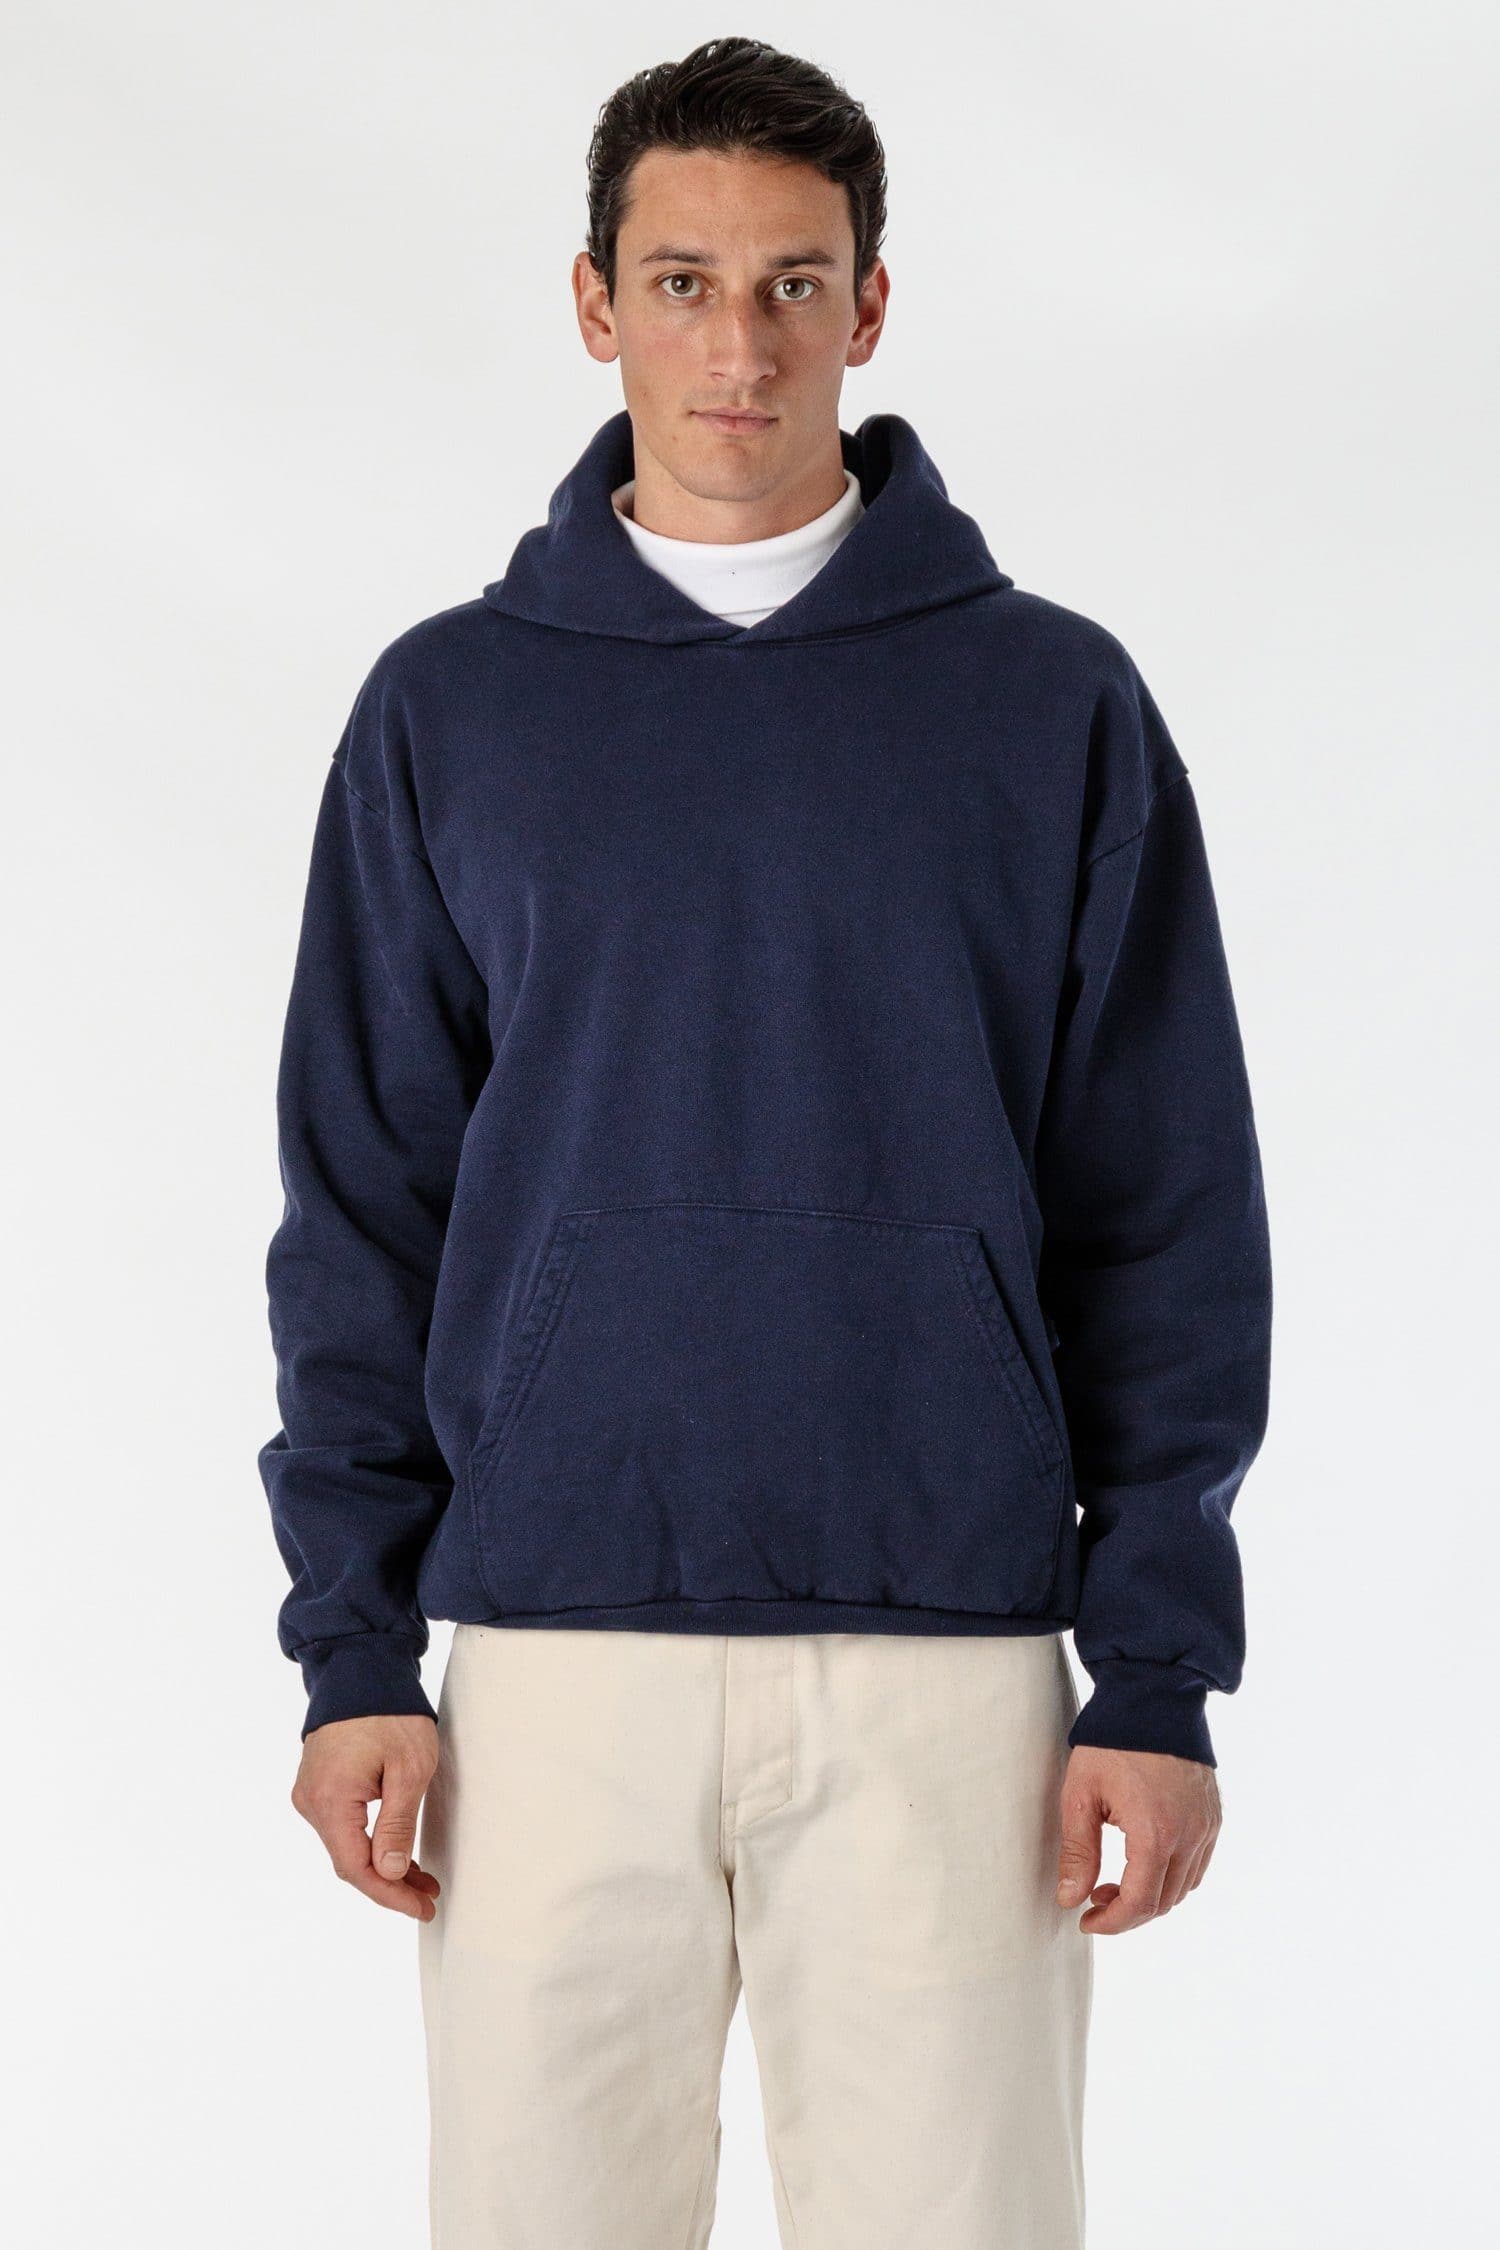 HF09GD - Garment Dye 14oz. Heavy Fleece Hooded Pullover Sweatshirt